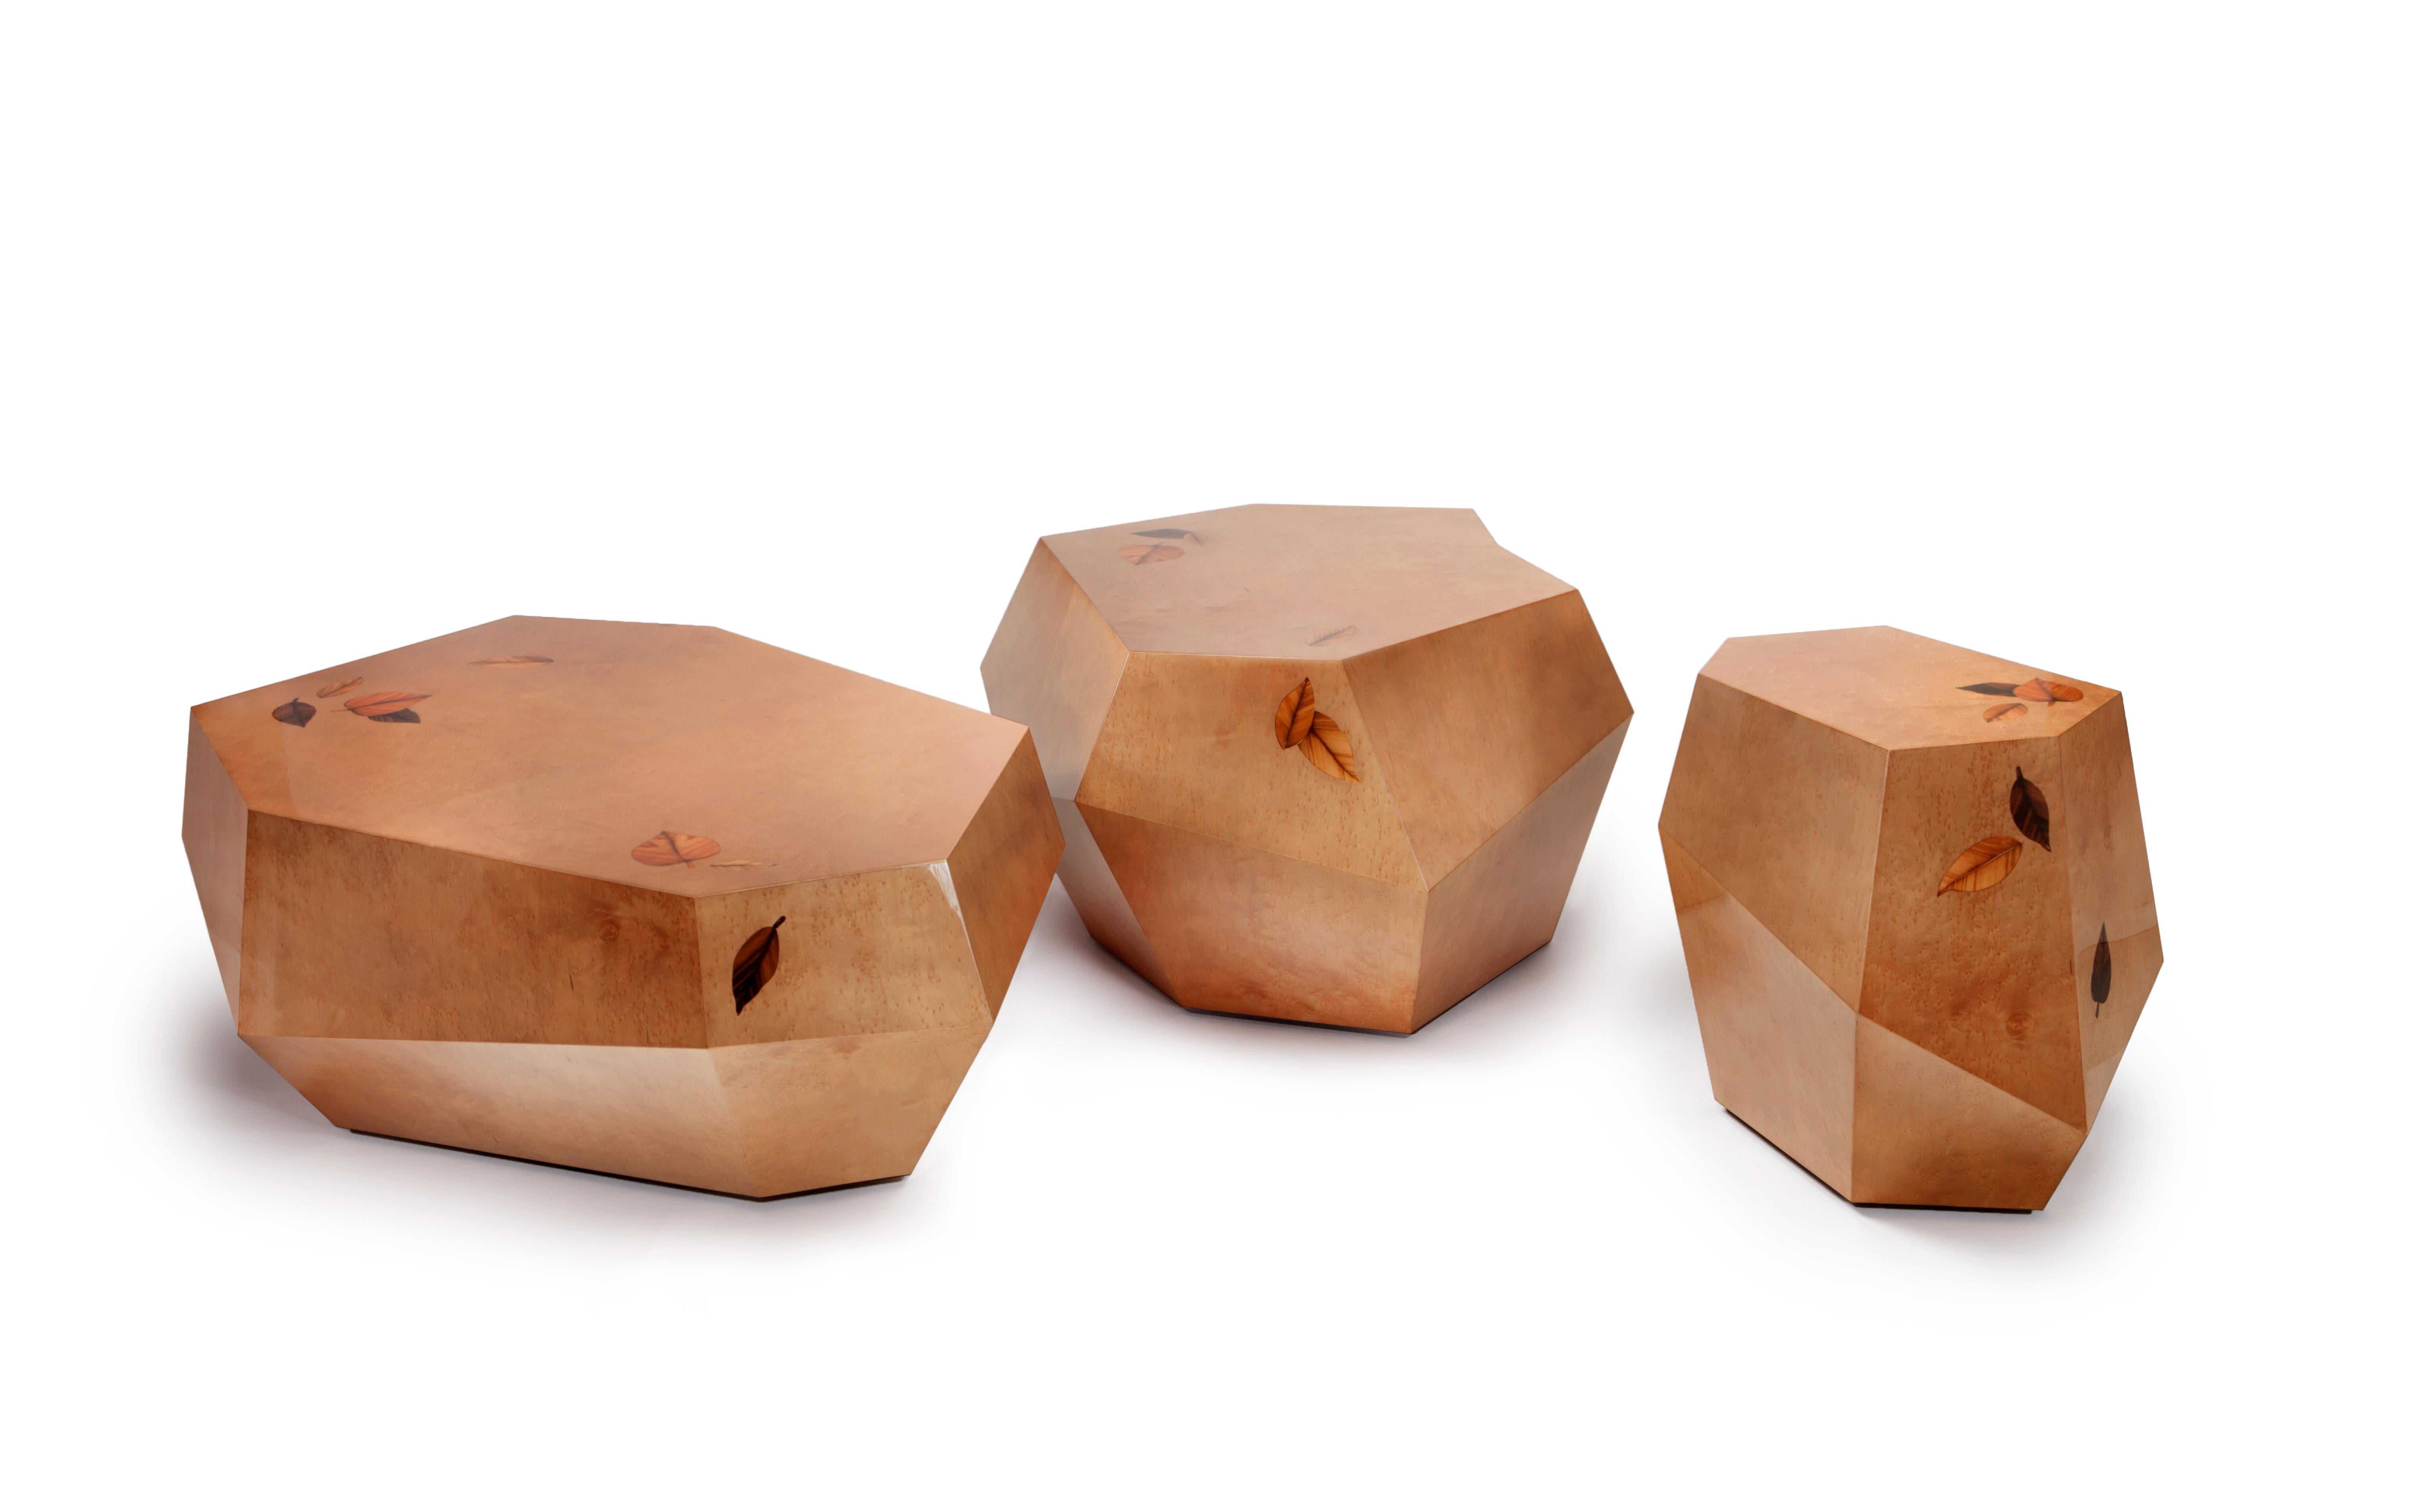 Die unregelmäßigen Formen der robusten Volumen der drei Rocks-Tische sind mit rauchbraunem Vogelaugenholzfurnier in Hochglanzlackierung ausgeführt. 
Die kleinen gepunkteten Knötchen dieses Furniers ähneln der Textur eines echten Felsens und der